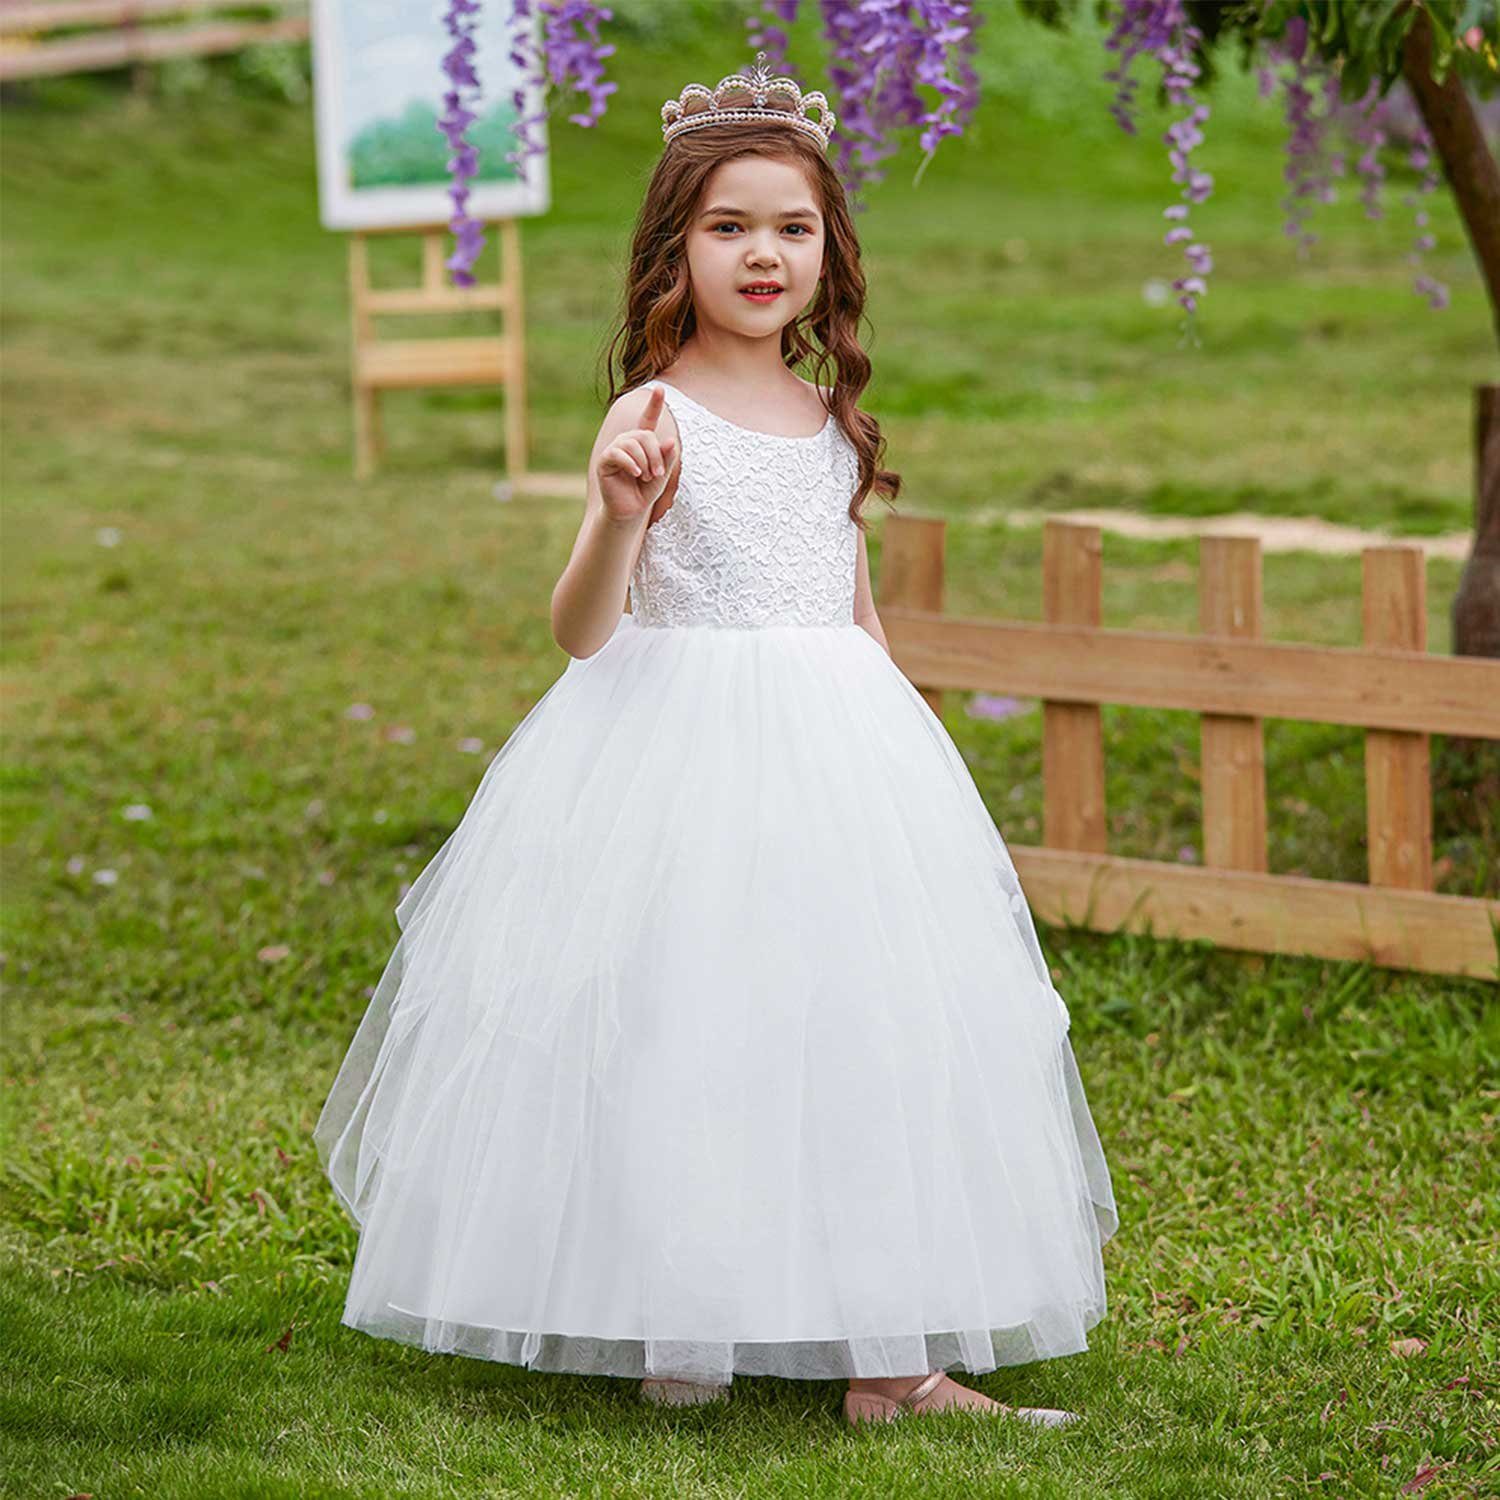 Daisred Partykleid Mädchenkleider Prinzessin Kleidung Kleider Weiß Performance